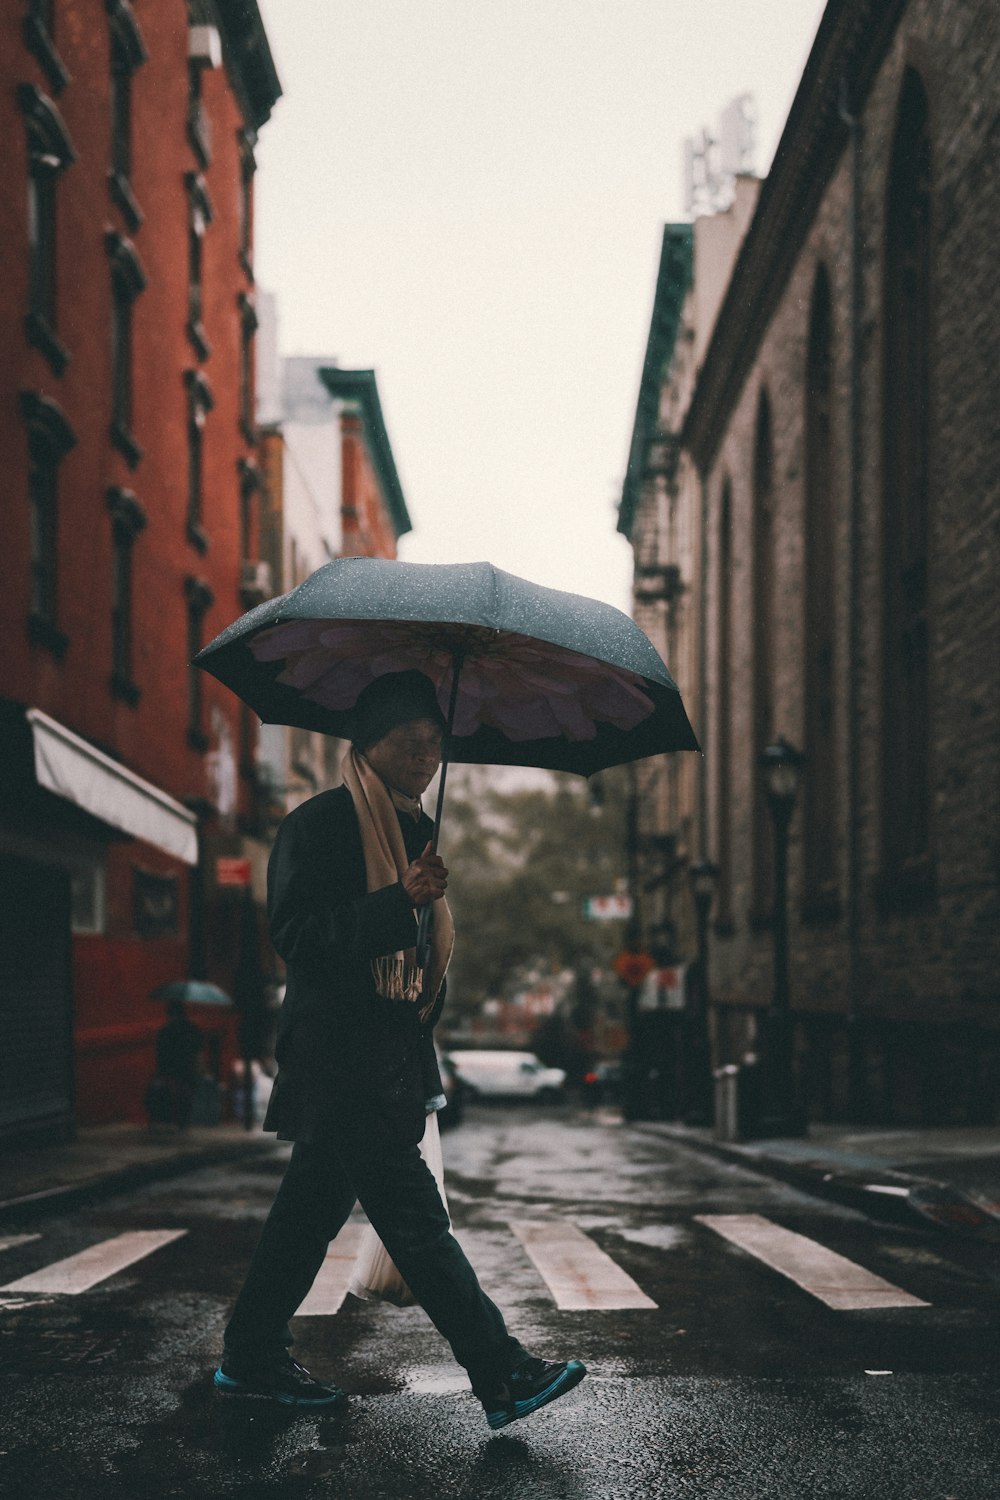 man in black jacket holding umbrella walking on street during daytime